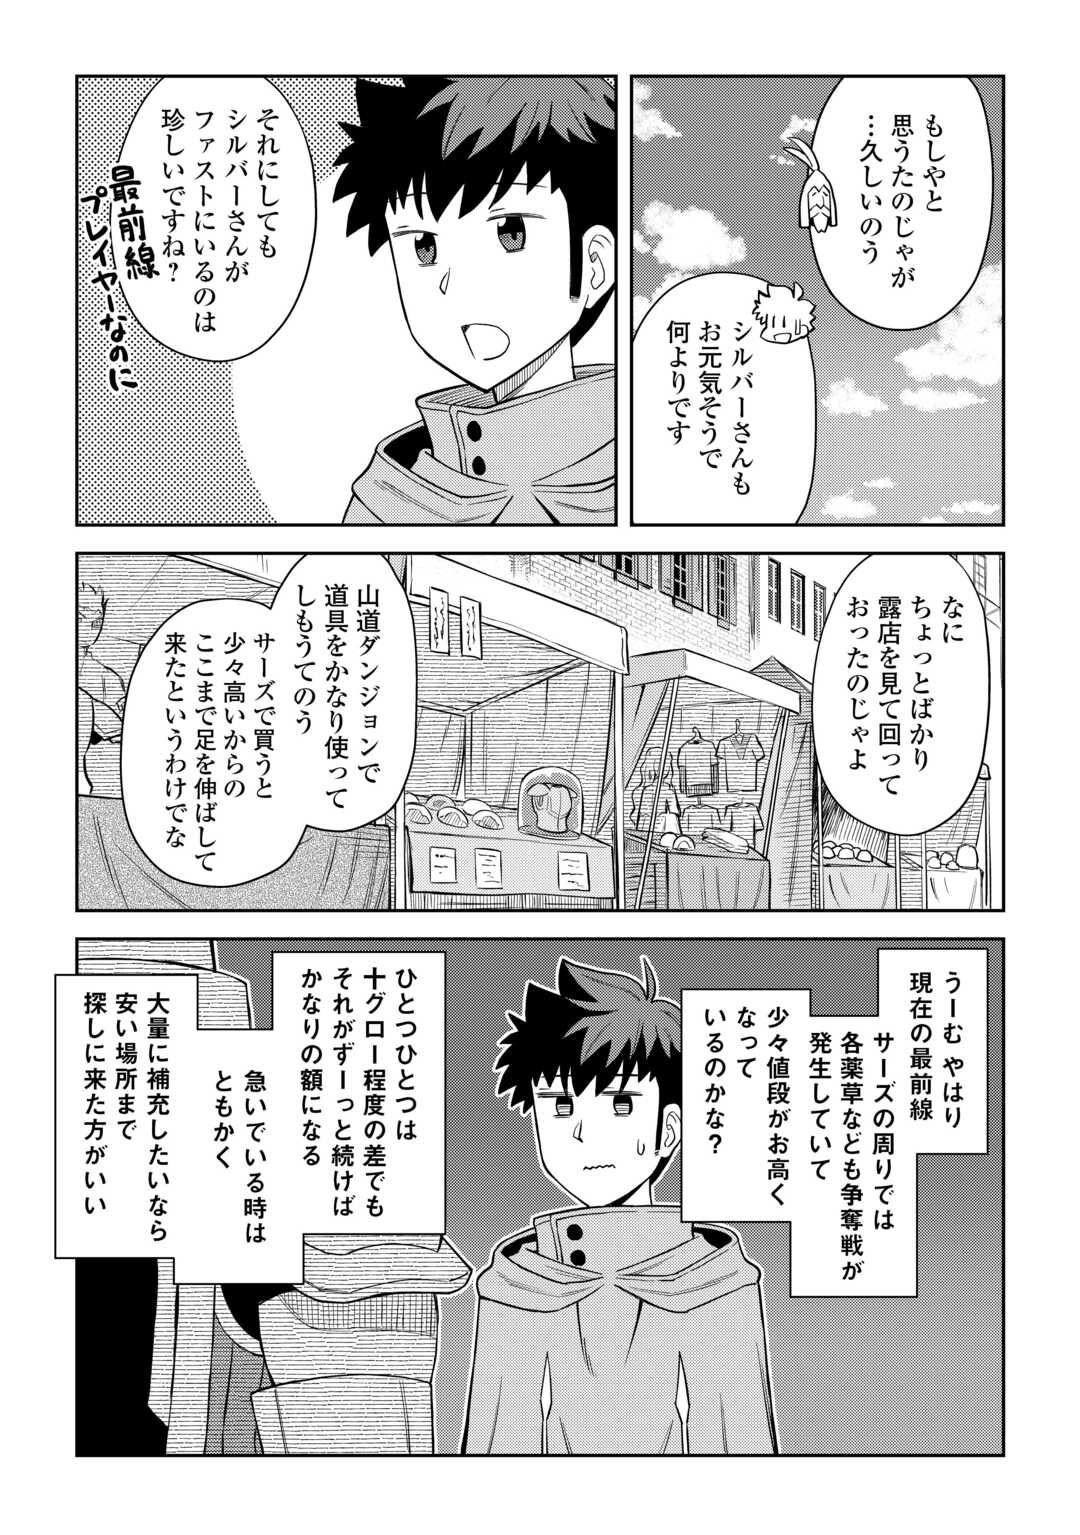 Toaru Ossan no VRMMO Katsudouki - Chapter 97 - Page 3